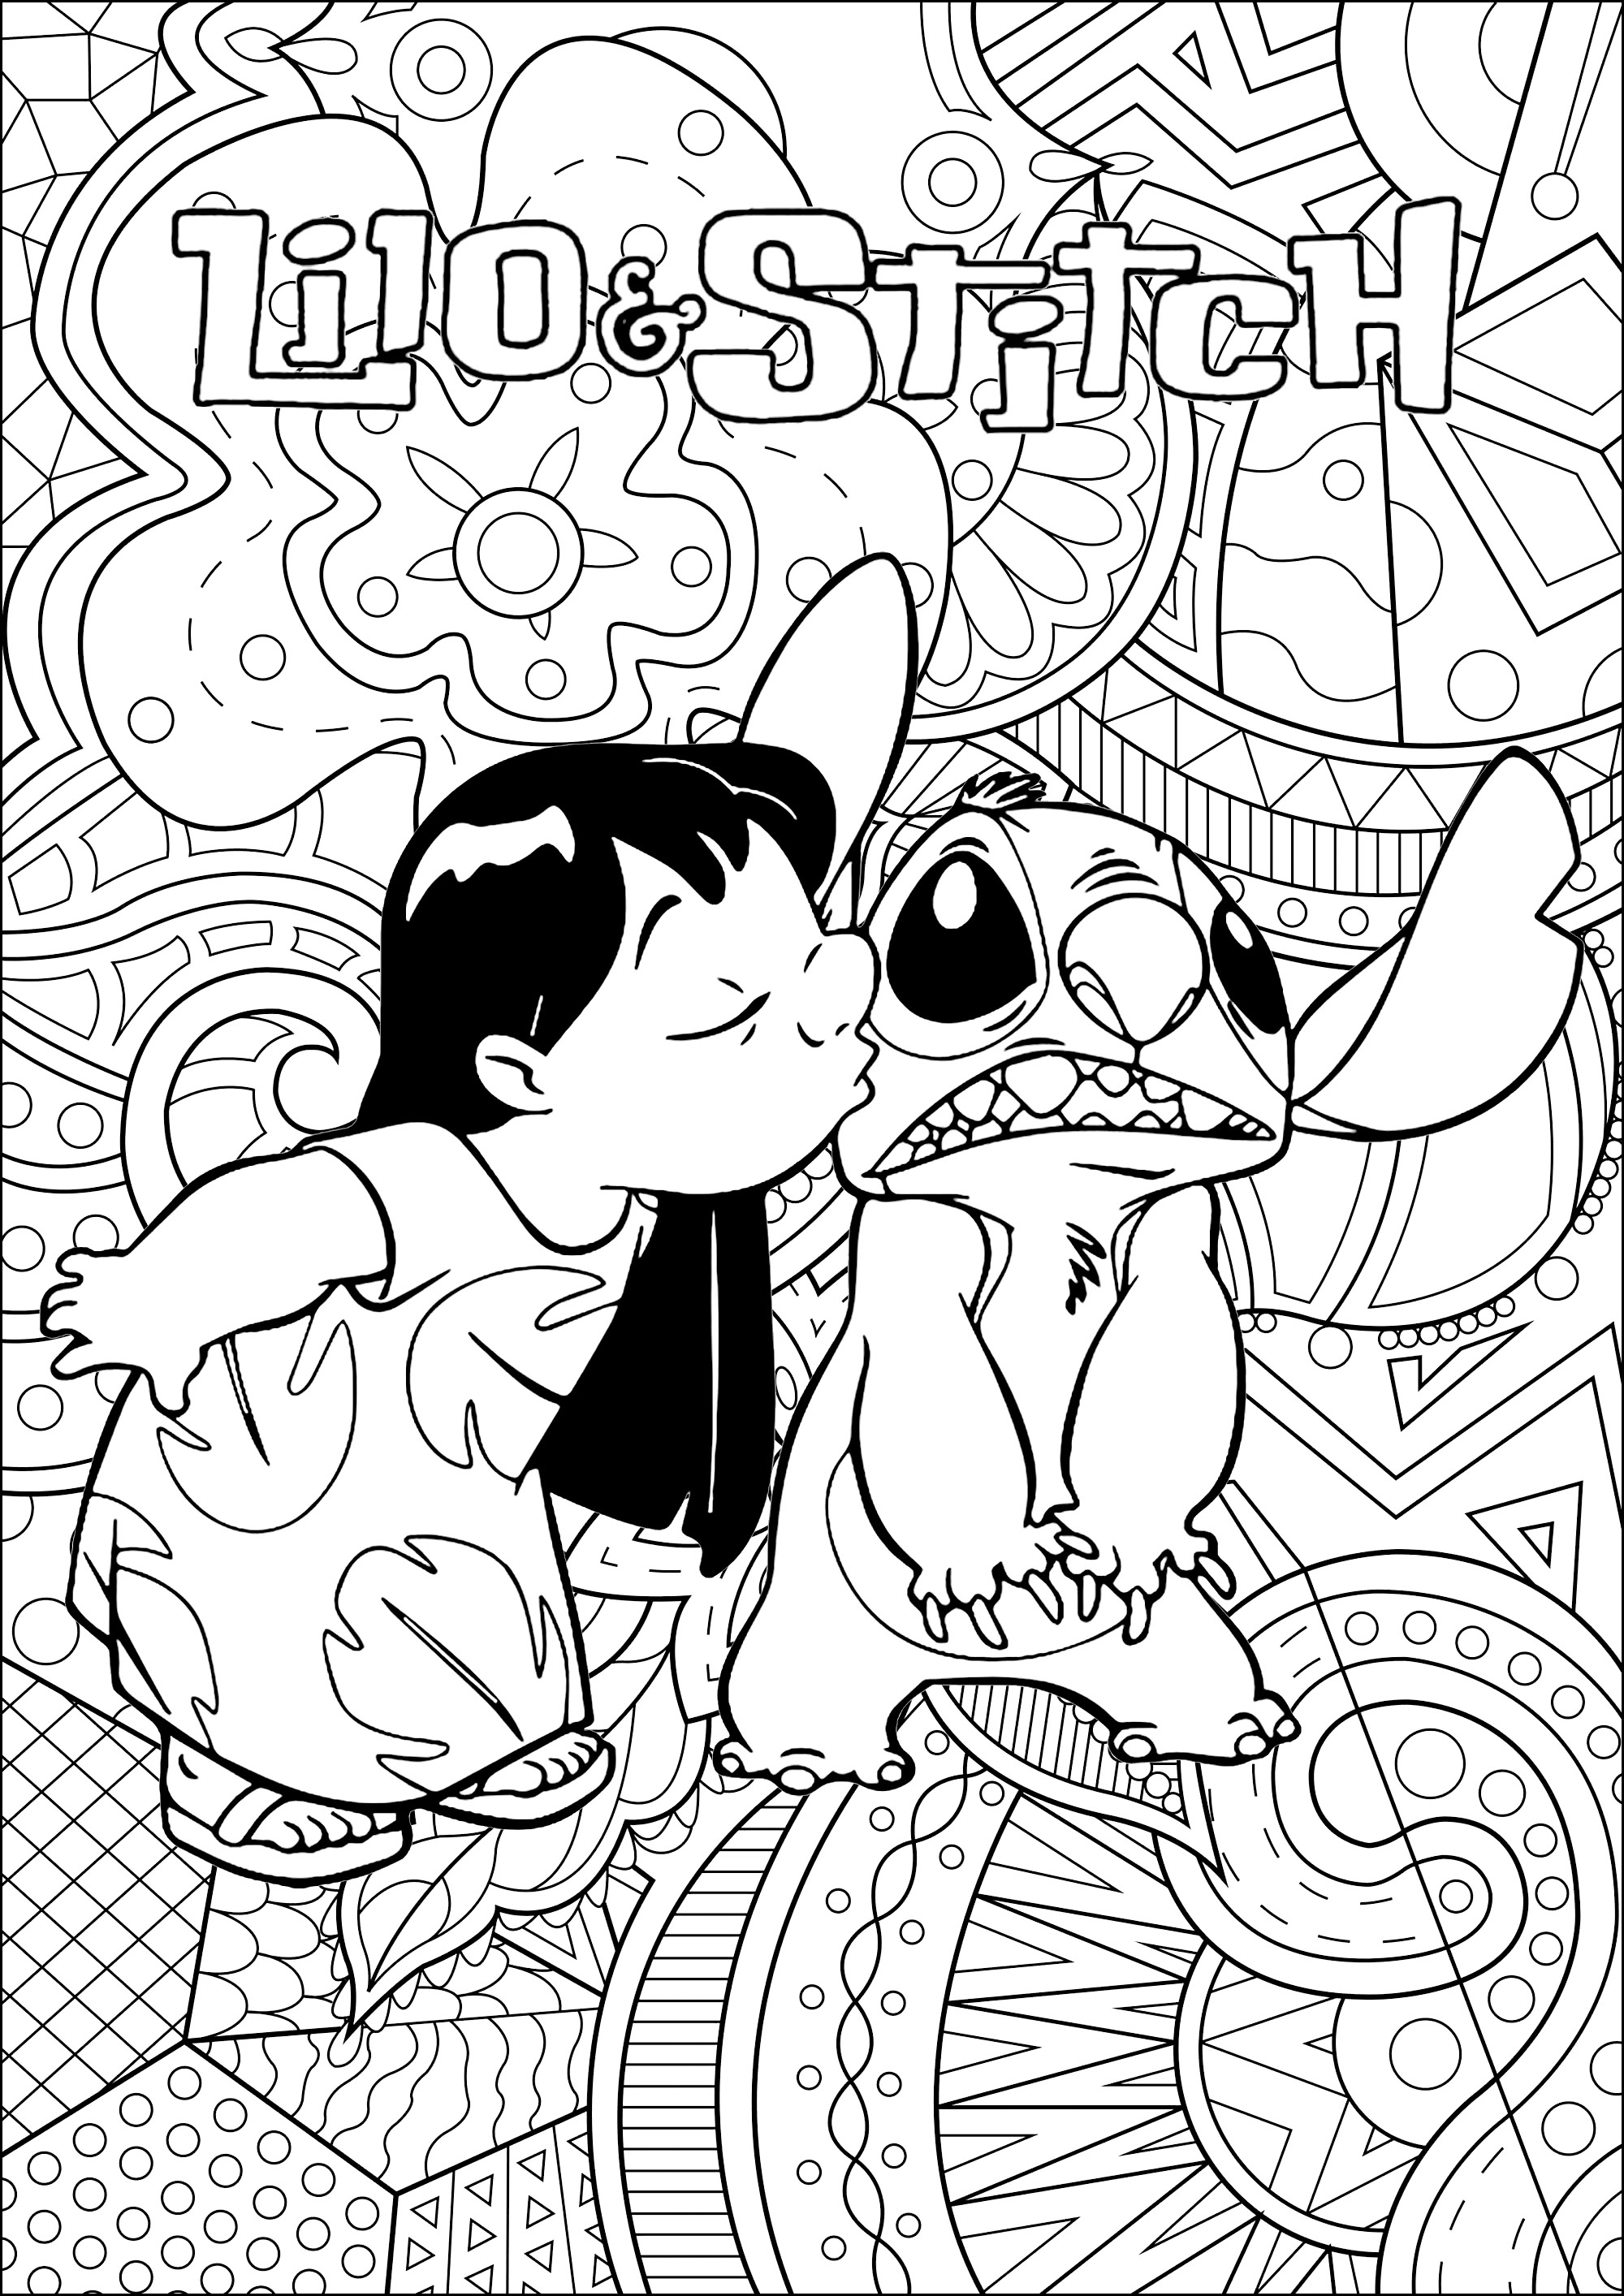 Pagina di Lilo e Stitch (Disney) da colorare con sfondo intricato. La storia di Lilo e Stitch? Stitch arriva sulla Terra, nel bel mezzo del Pacifico, sull'isola di Hawaii. Il piccolo alieno viene presto accolto da Lilo, un'adorabile bambina di sei anni che lo scambia per un cane abbandonato ...